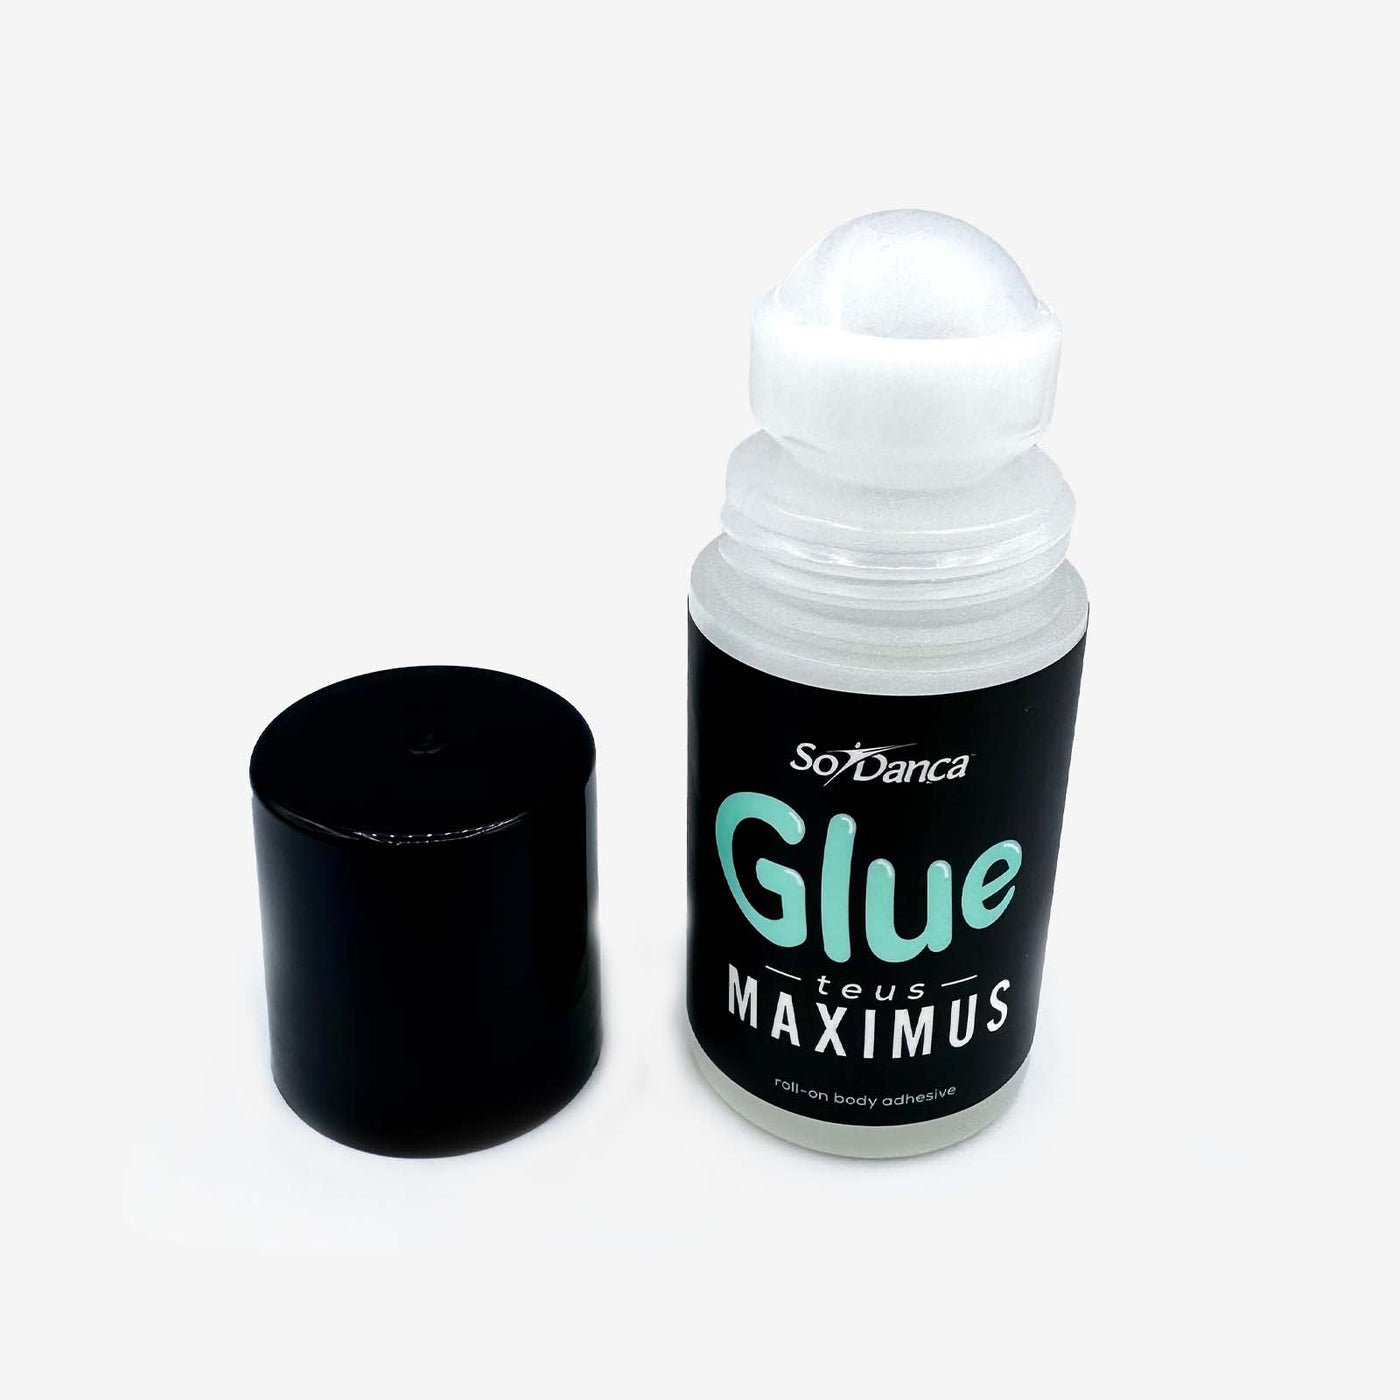 Glue-teus Maximus - AC33